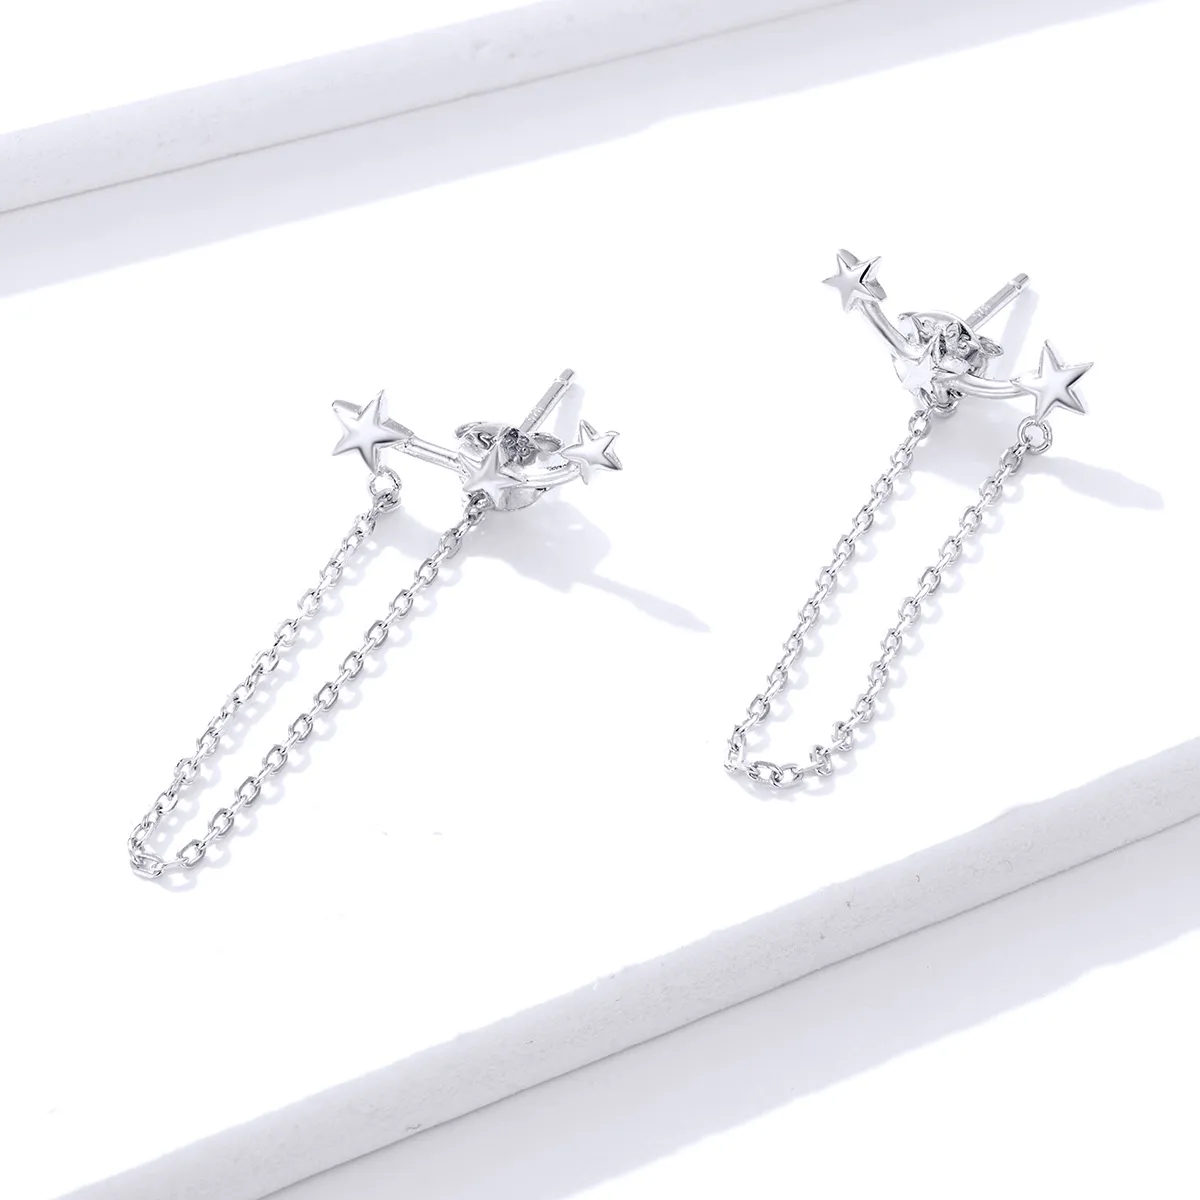 Pandora Style Silver Starry Dangle Earrings - BSE361